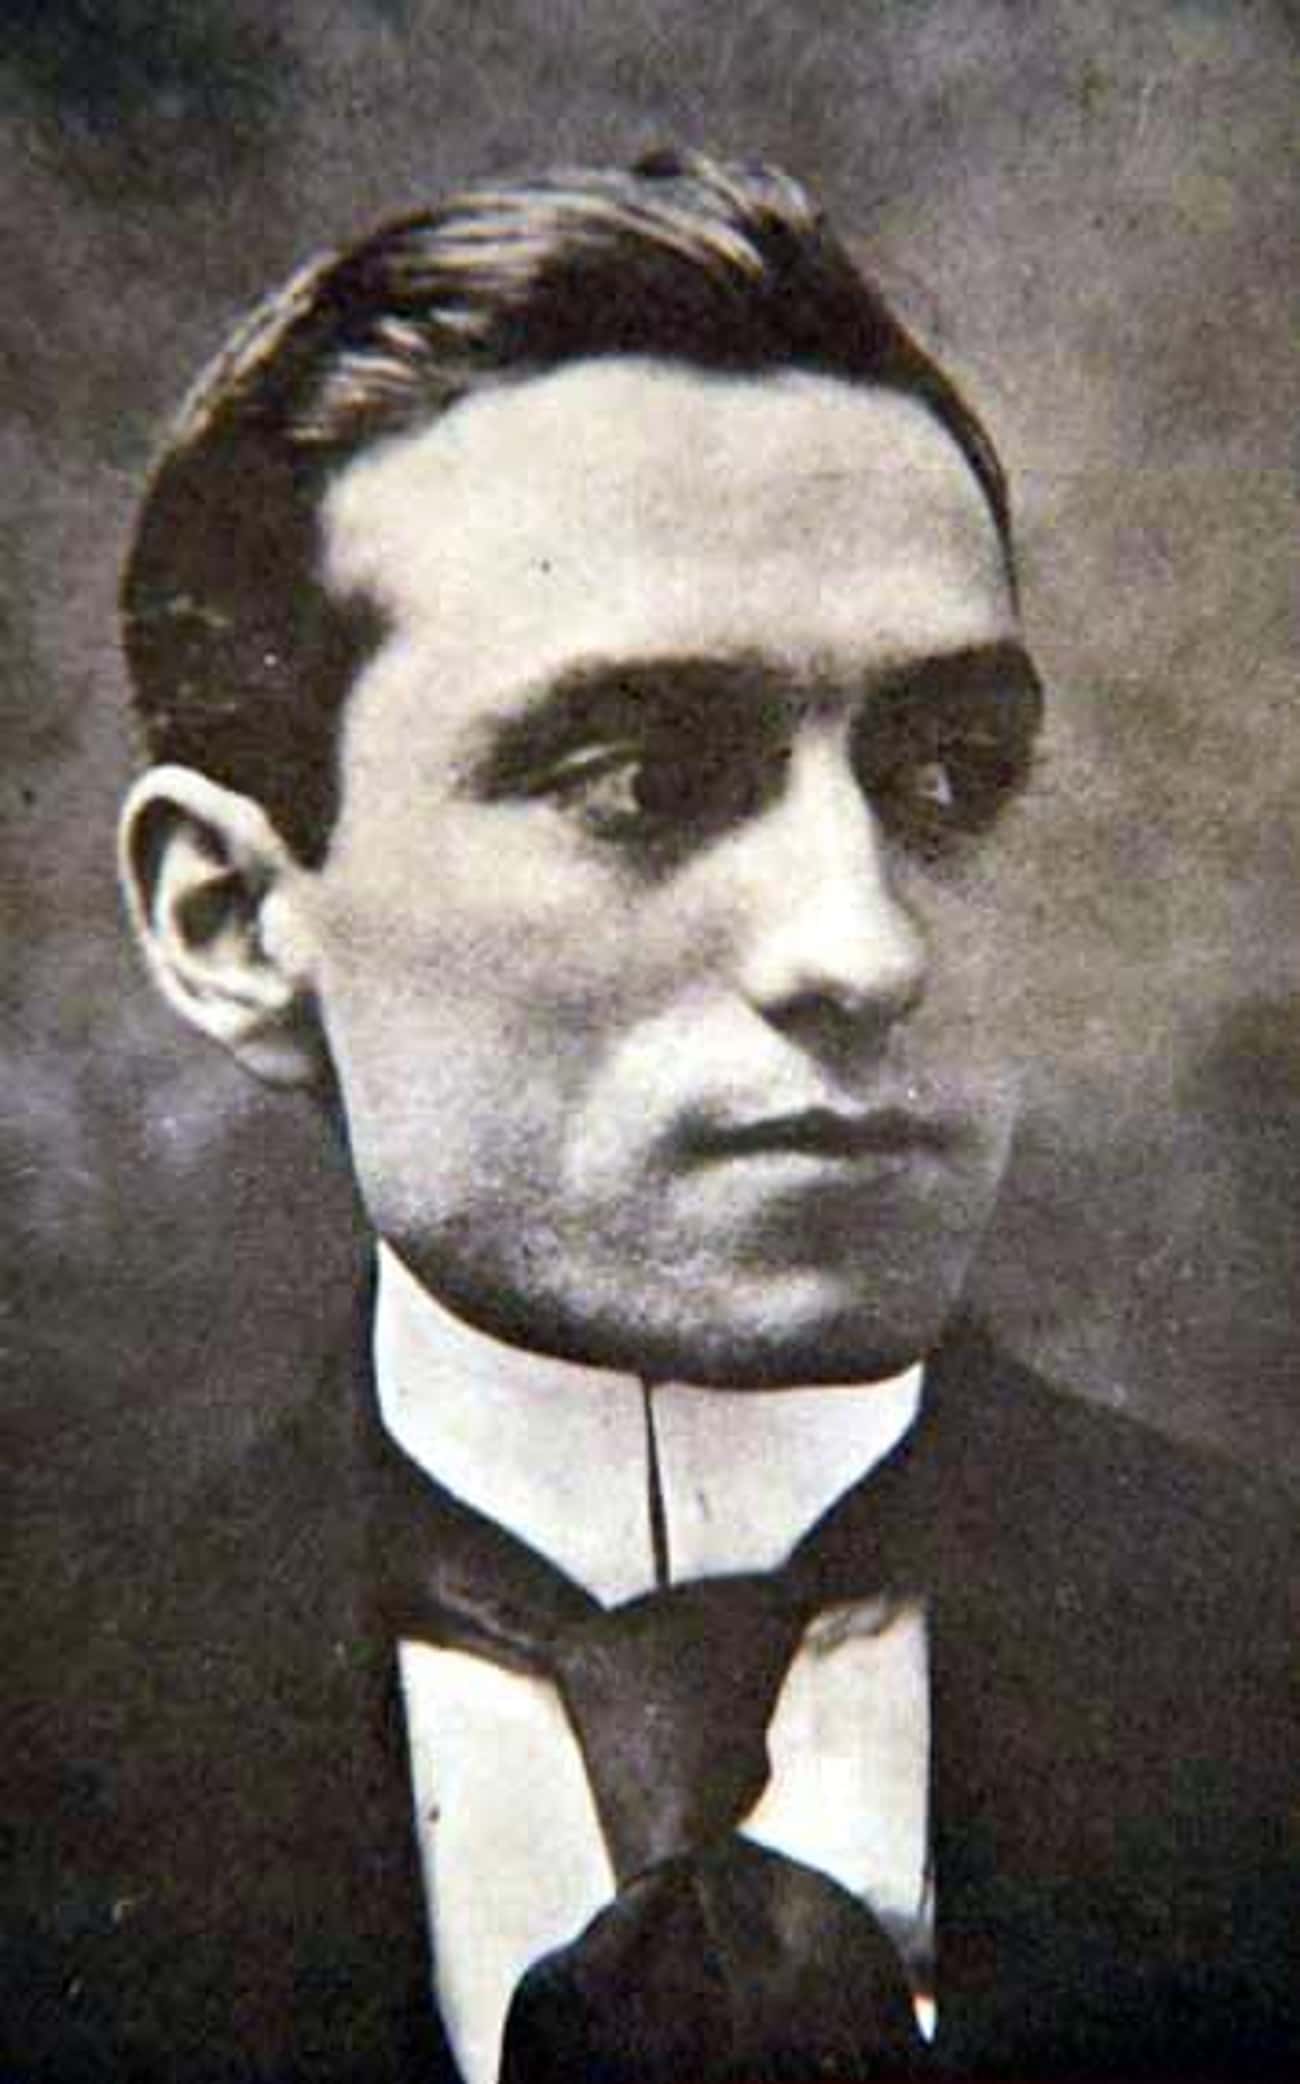 Antonio Estrada